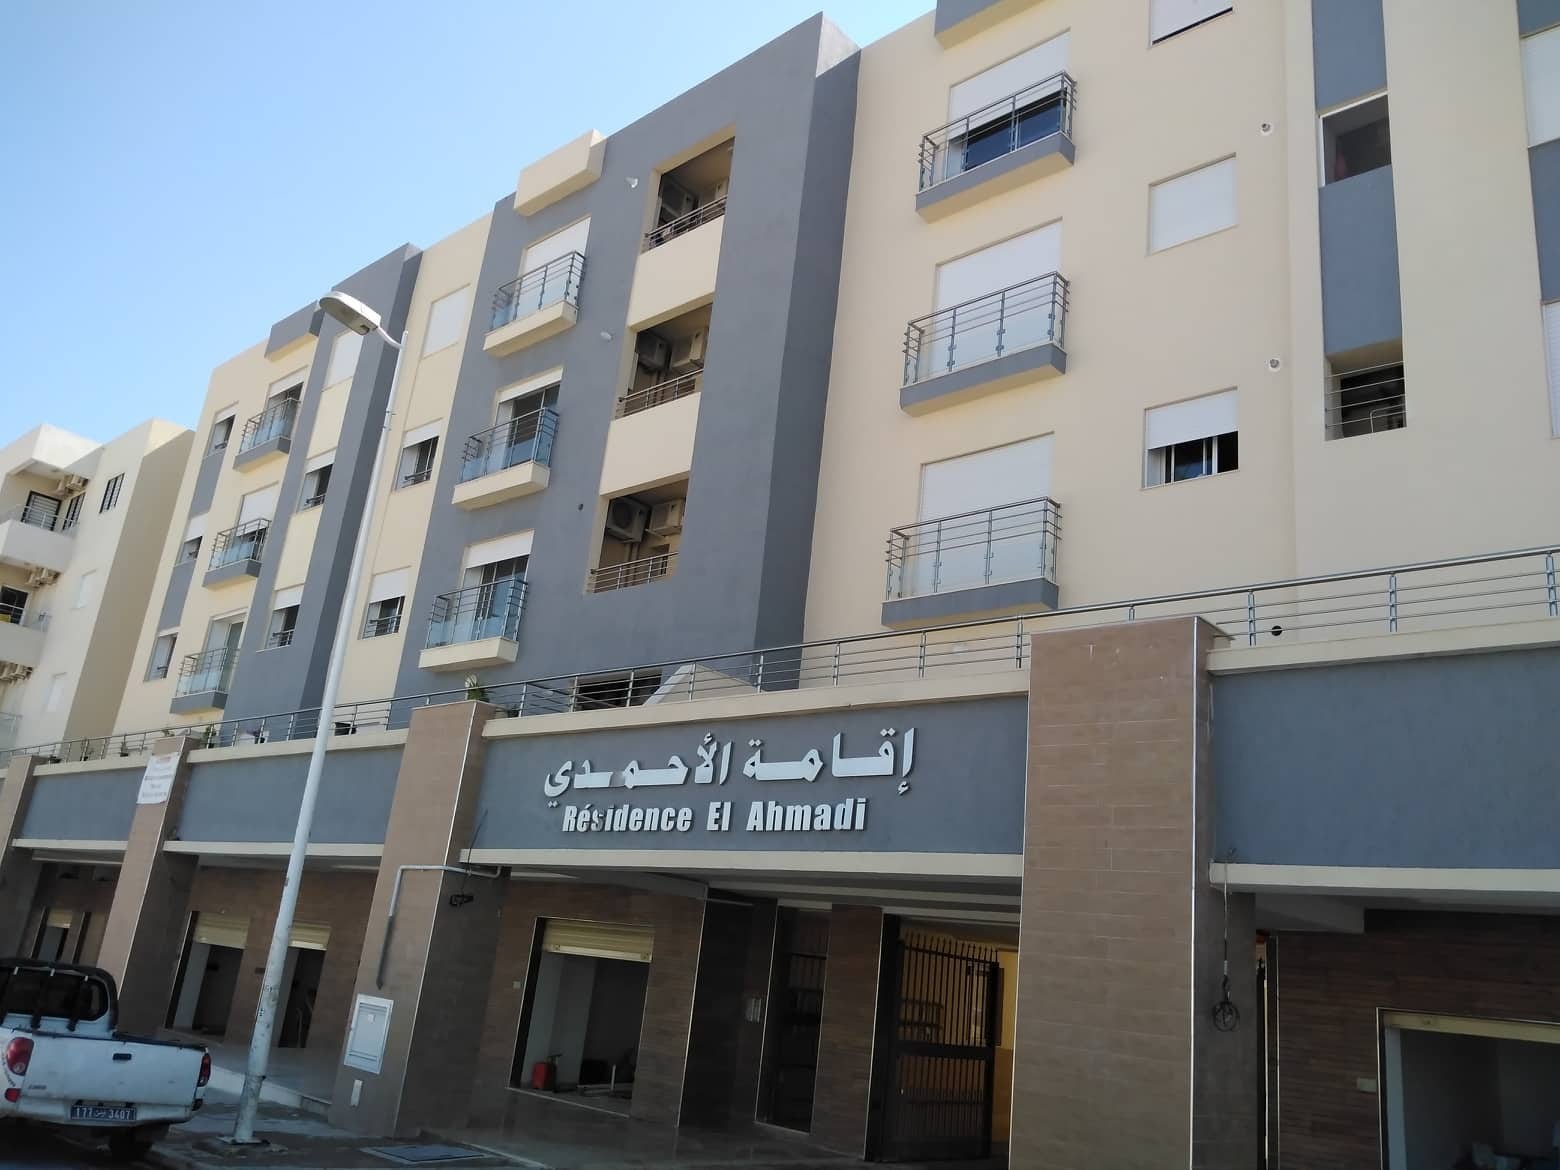  El Ahmadi residence